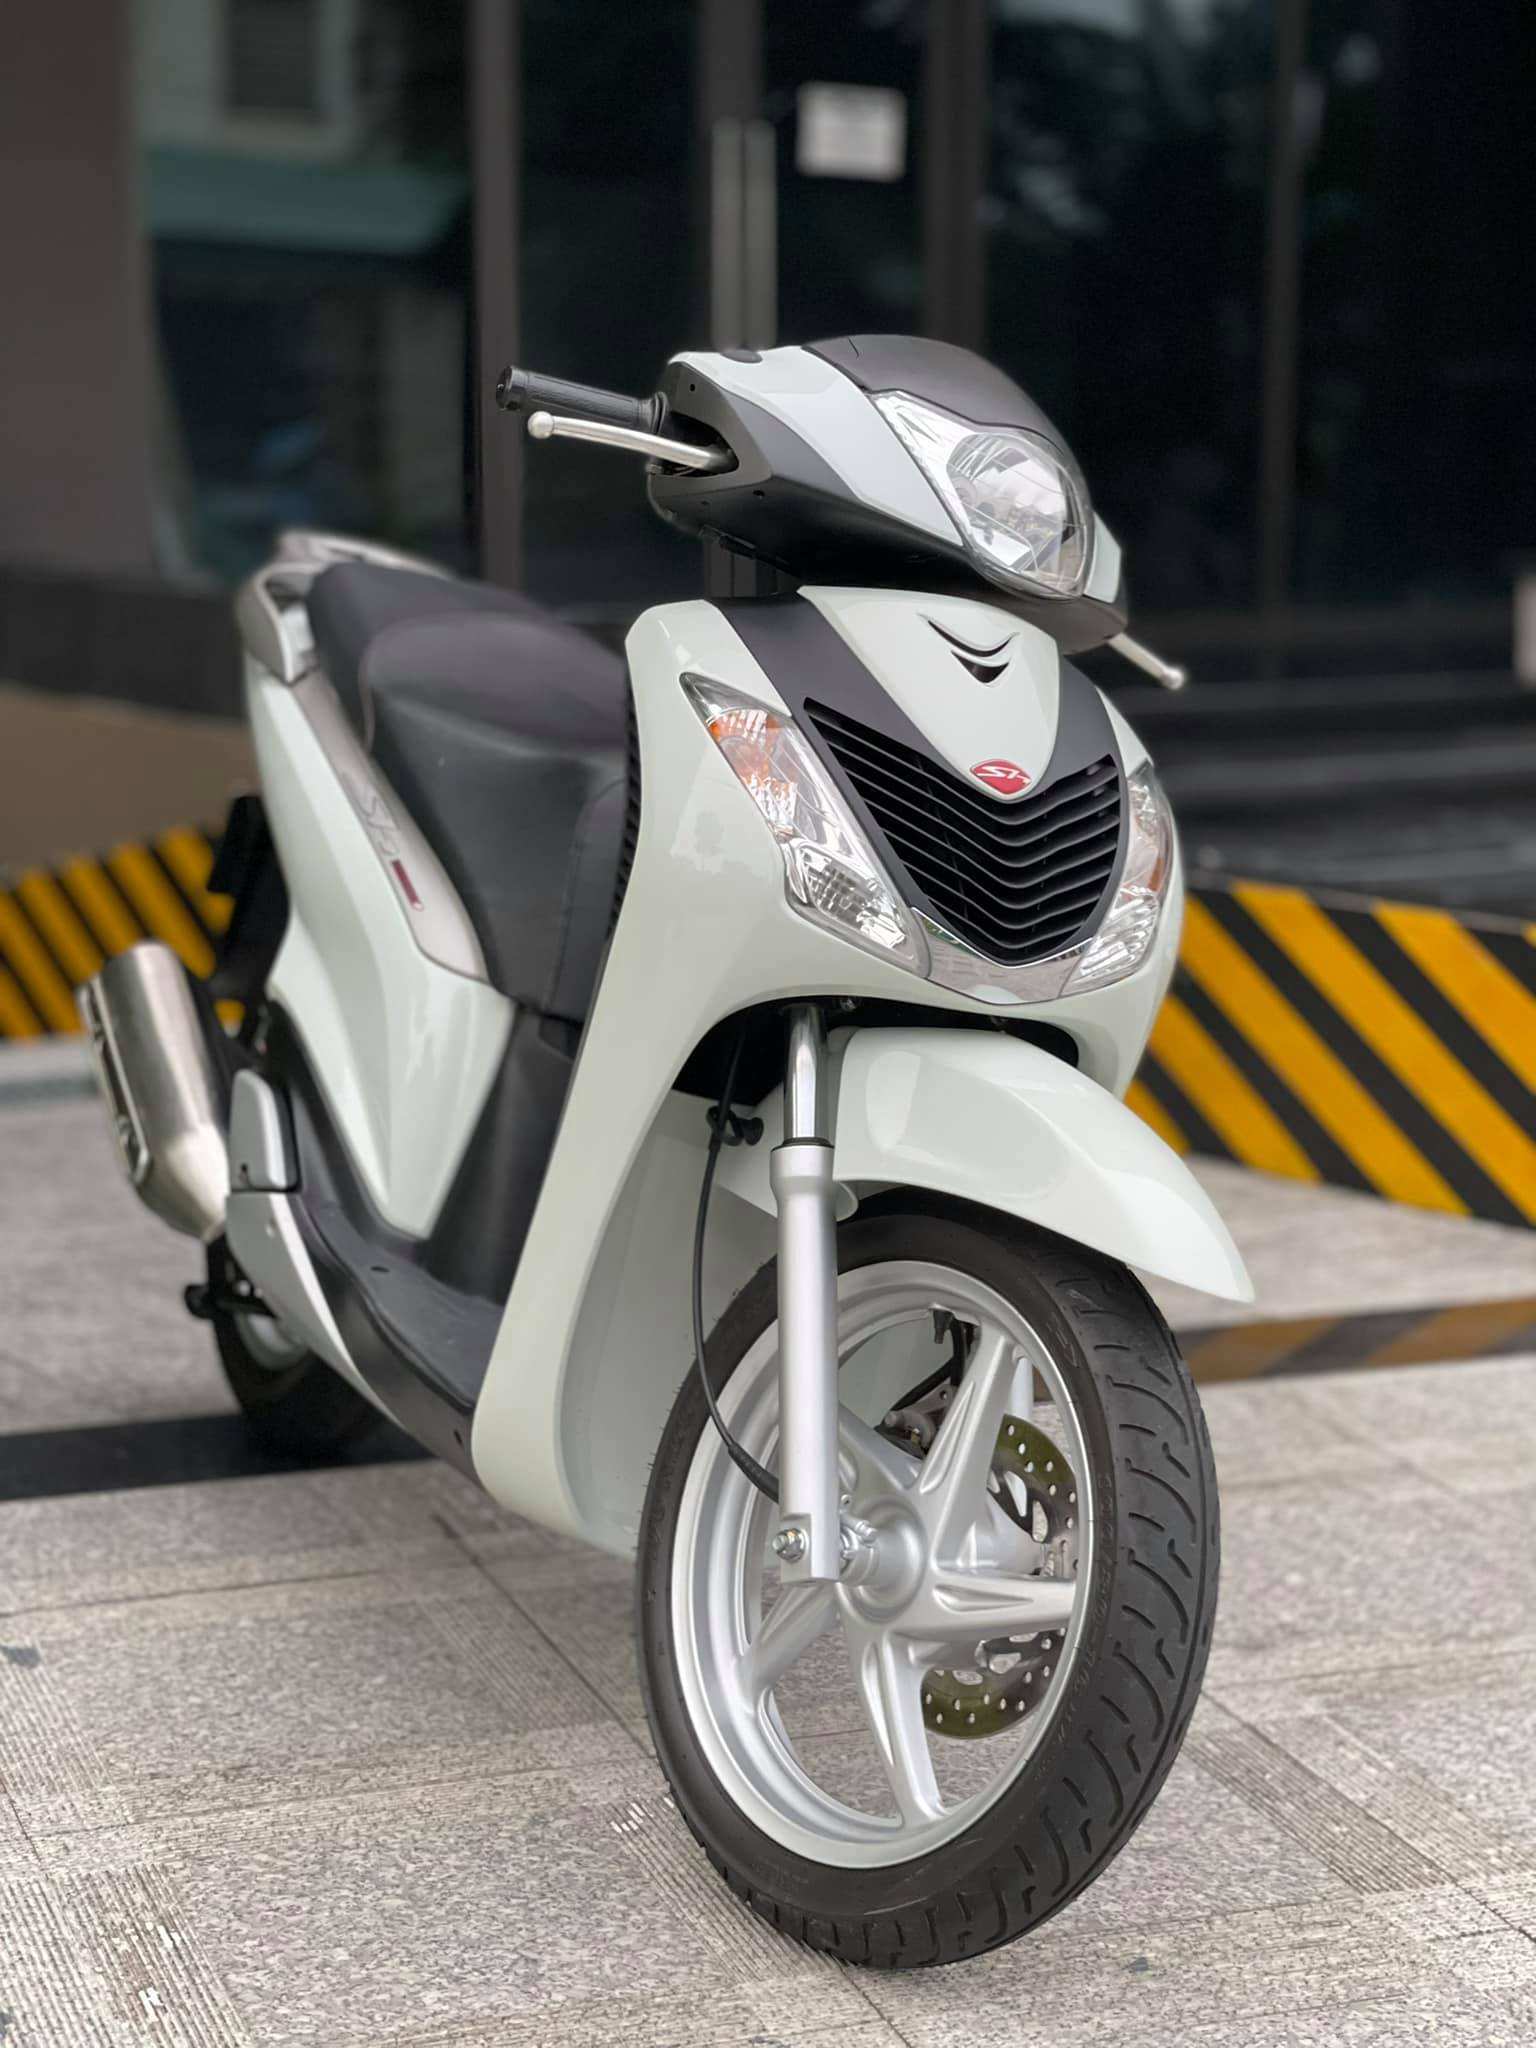 Honda SH 150 ABS 2021 Sporty Siêu Lướt 800km  Cửa Hàng Xe Máy Anh Lộc   Mua Bán Xe Máy Cũ Mới Chất Lượng Tại Hà Nội